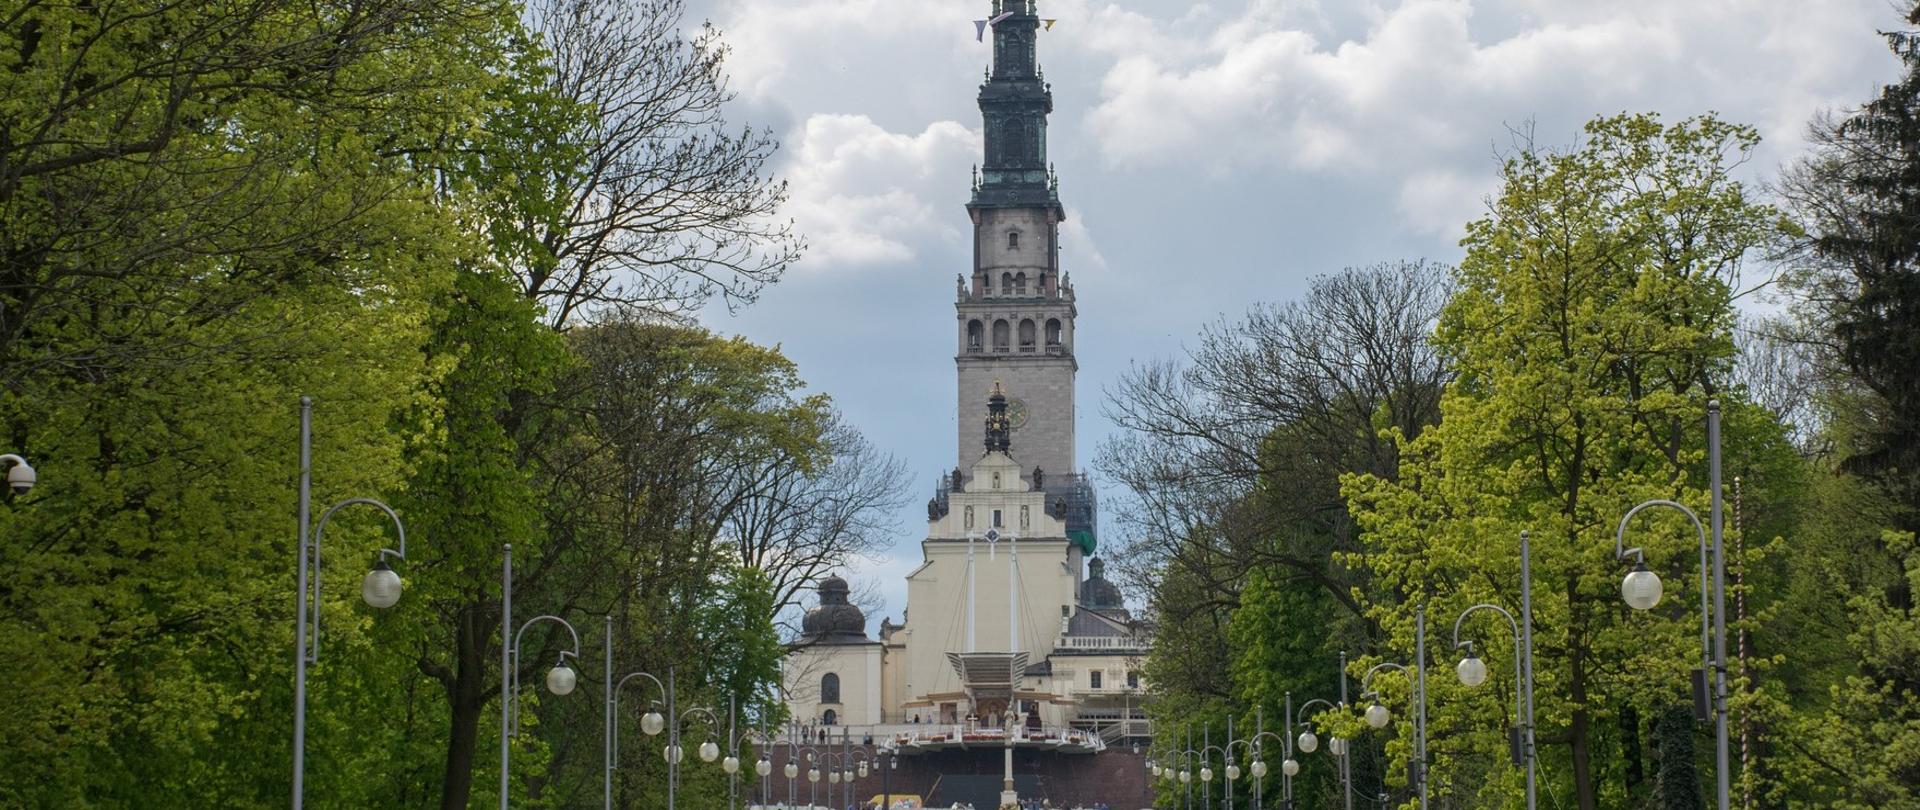 Widok od strony deptaku na Sanktuarium w Częstochowie.